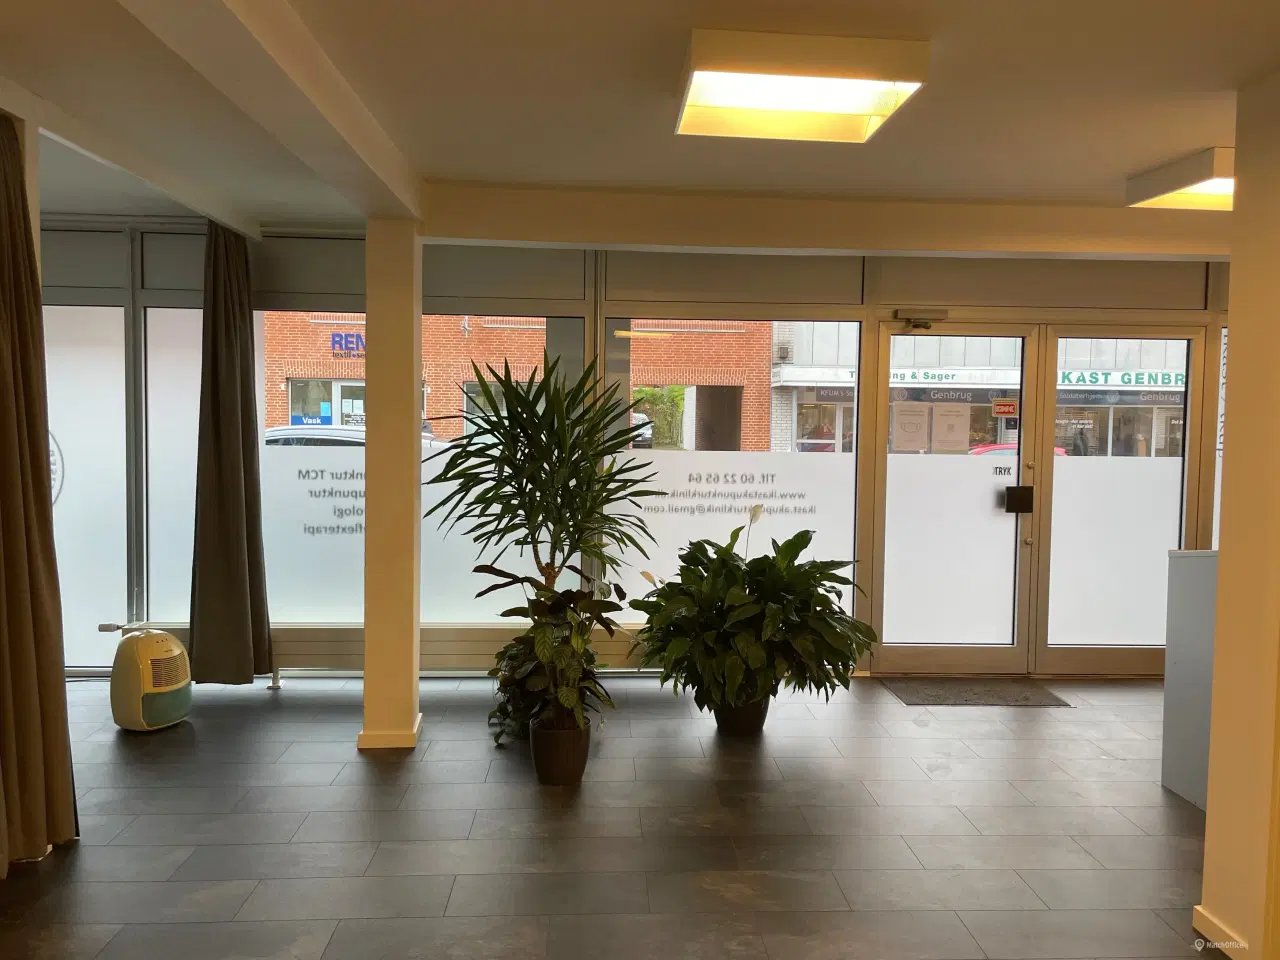 Billede 12 - 110 m2 kontor, klinik, butik centralt i Ikast by.